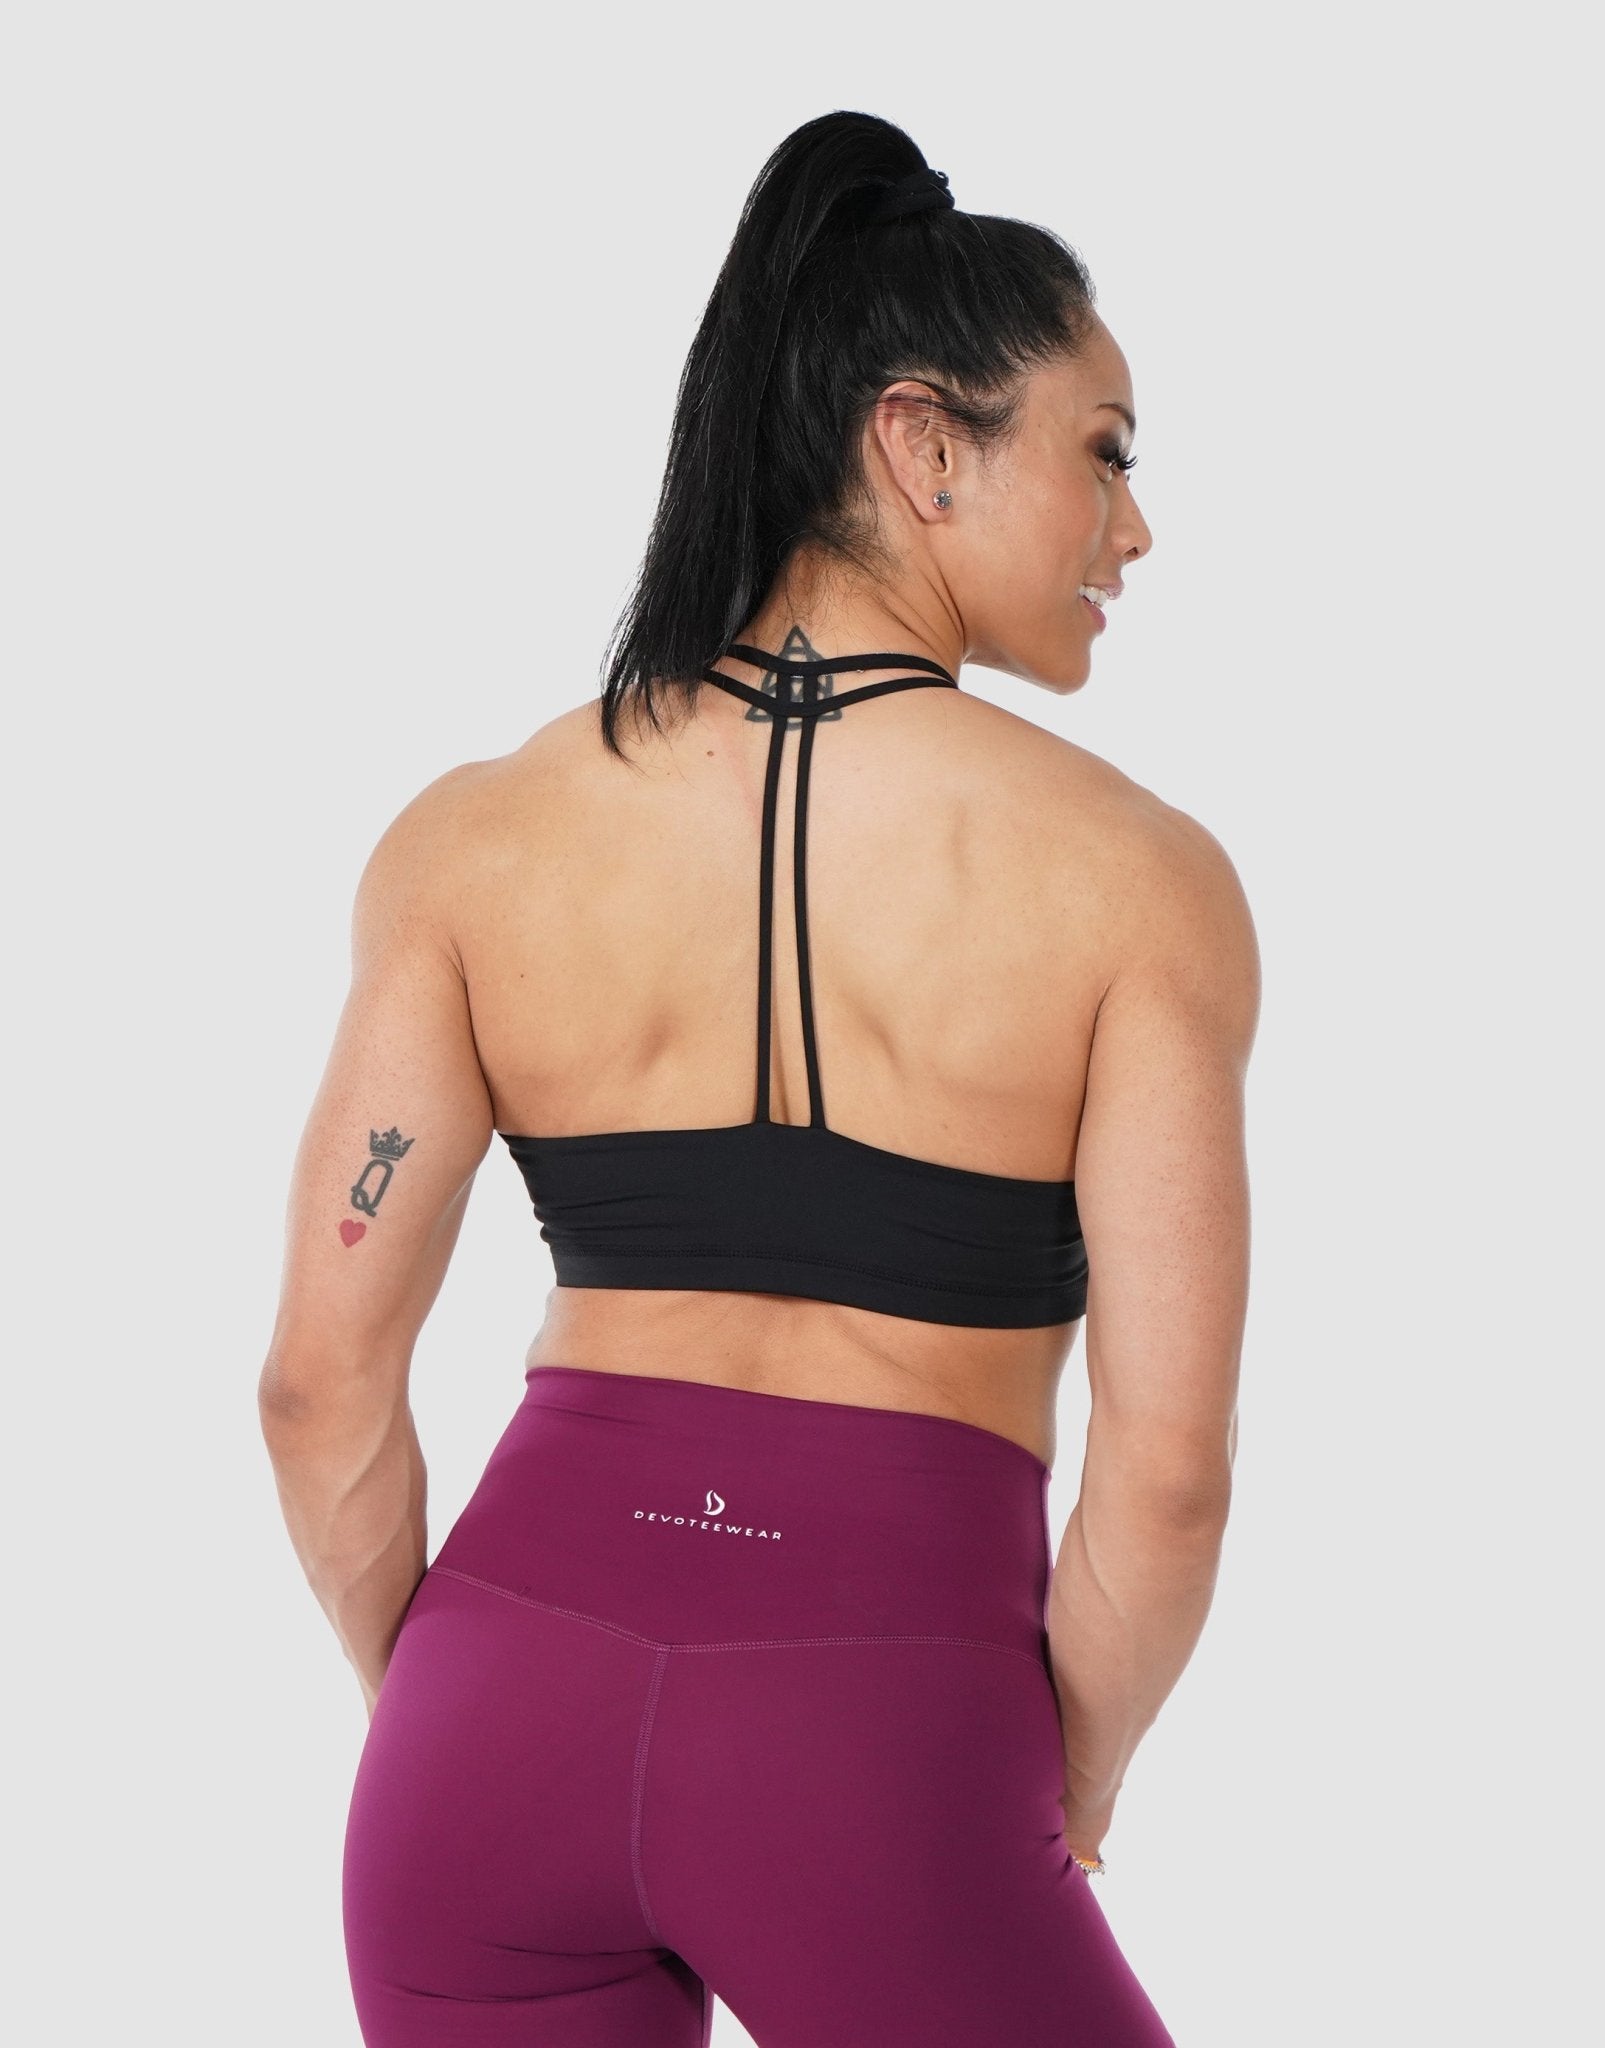 Tawop Best Bras for Women Women'S Vest Yoga Comfortable Wireless Underwear  Sports Bras Women Vibrating Panties 